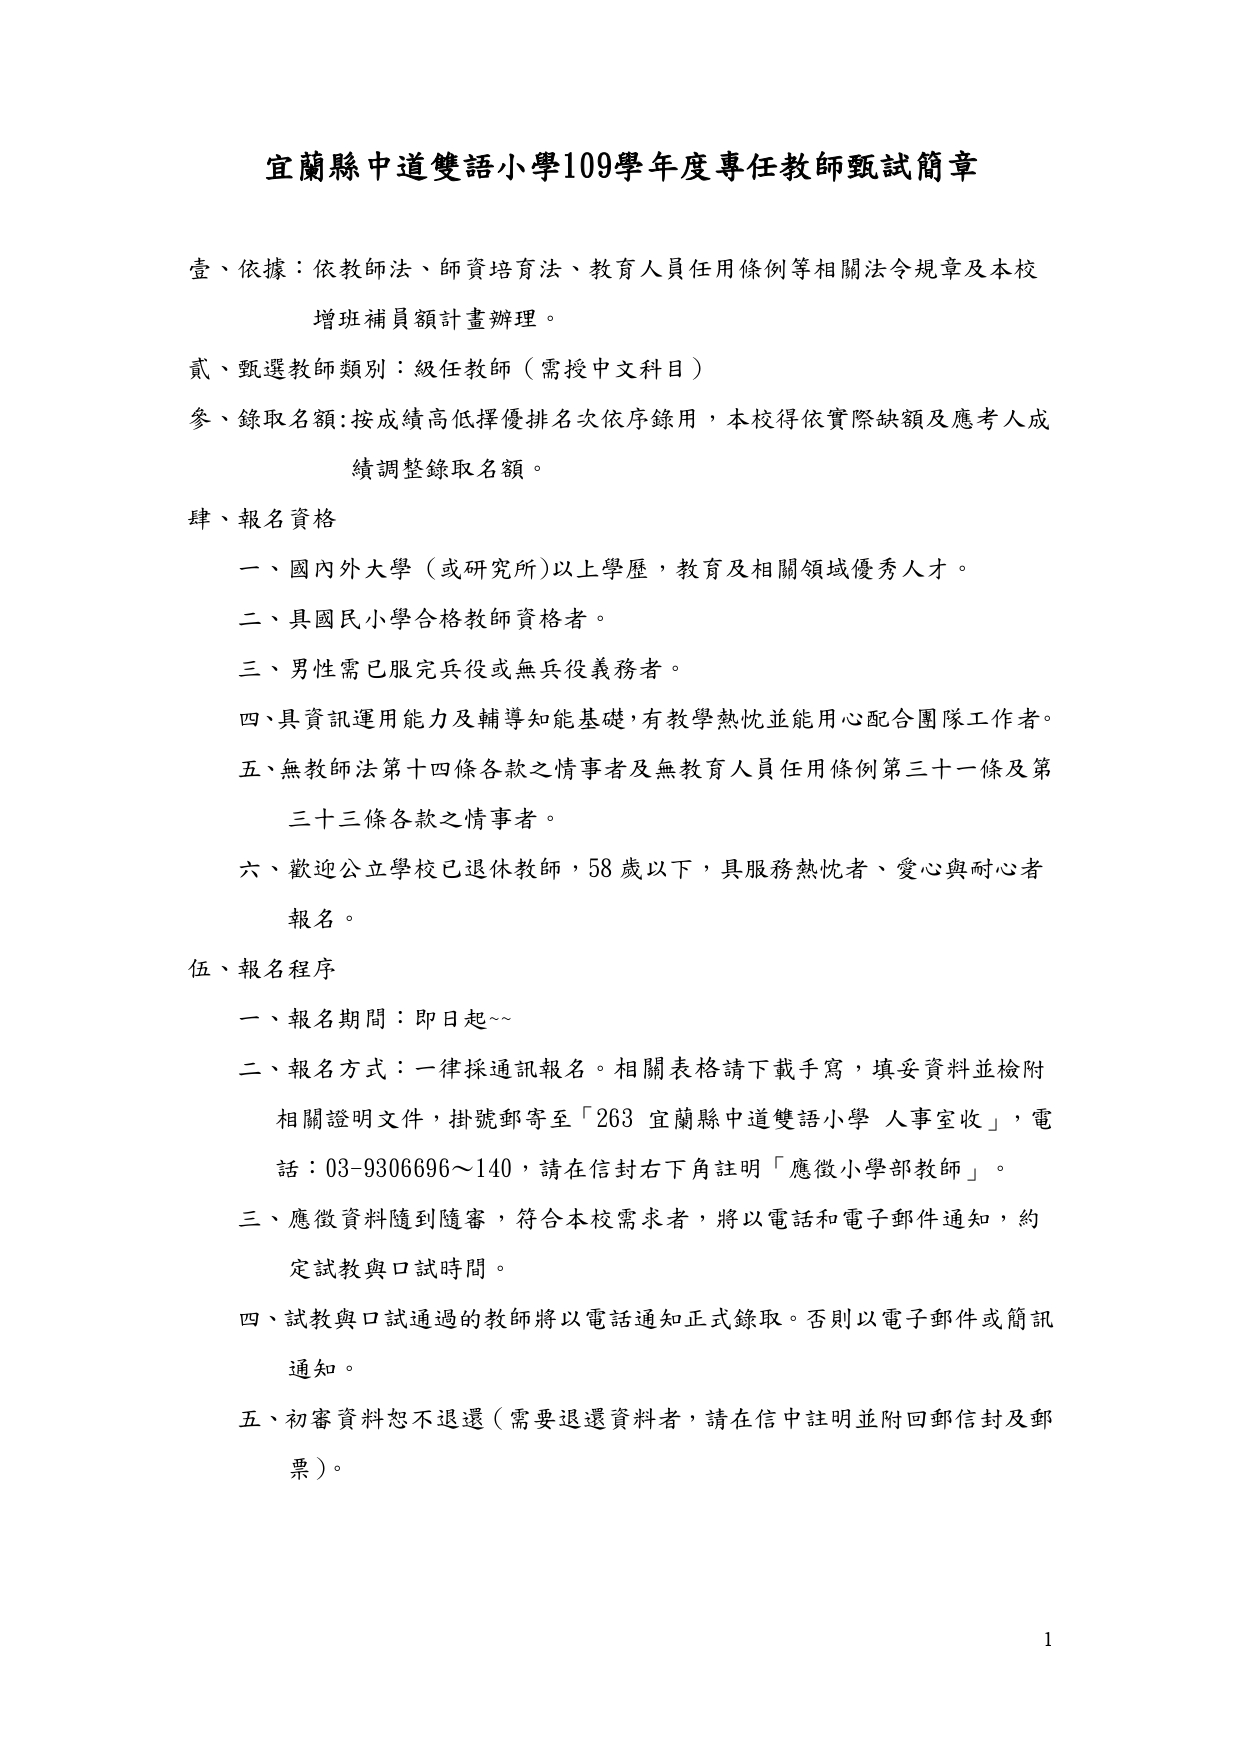 109中道小學教甄簡章3 1 page 0001